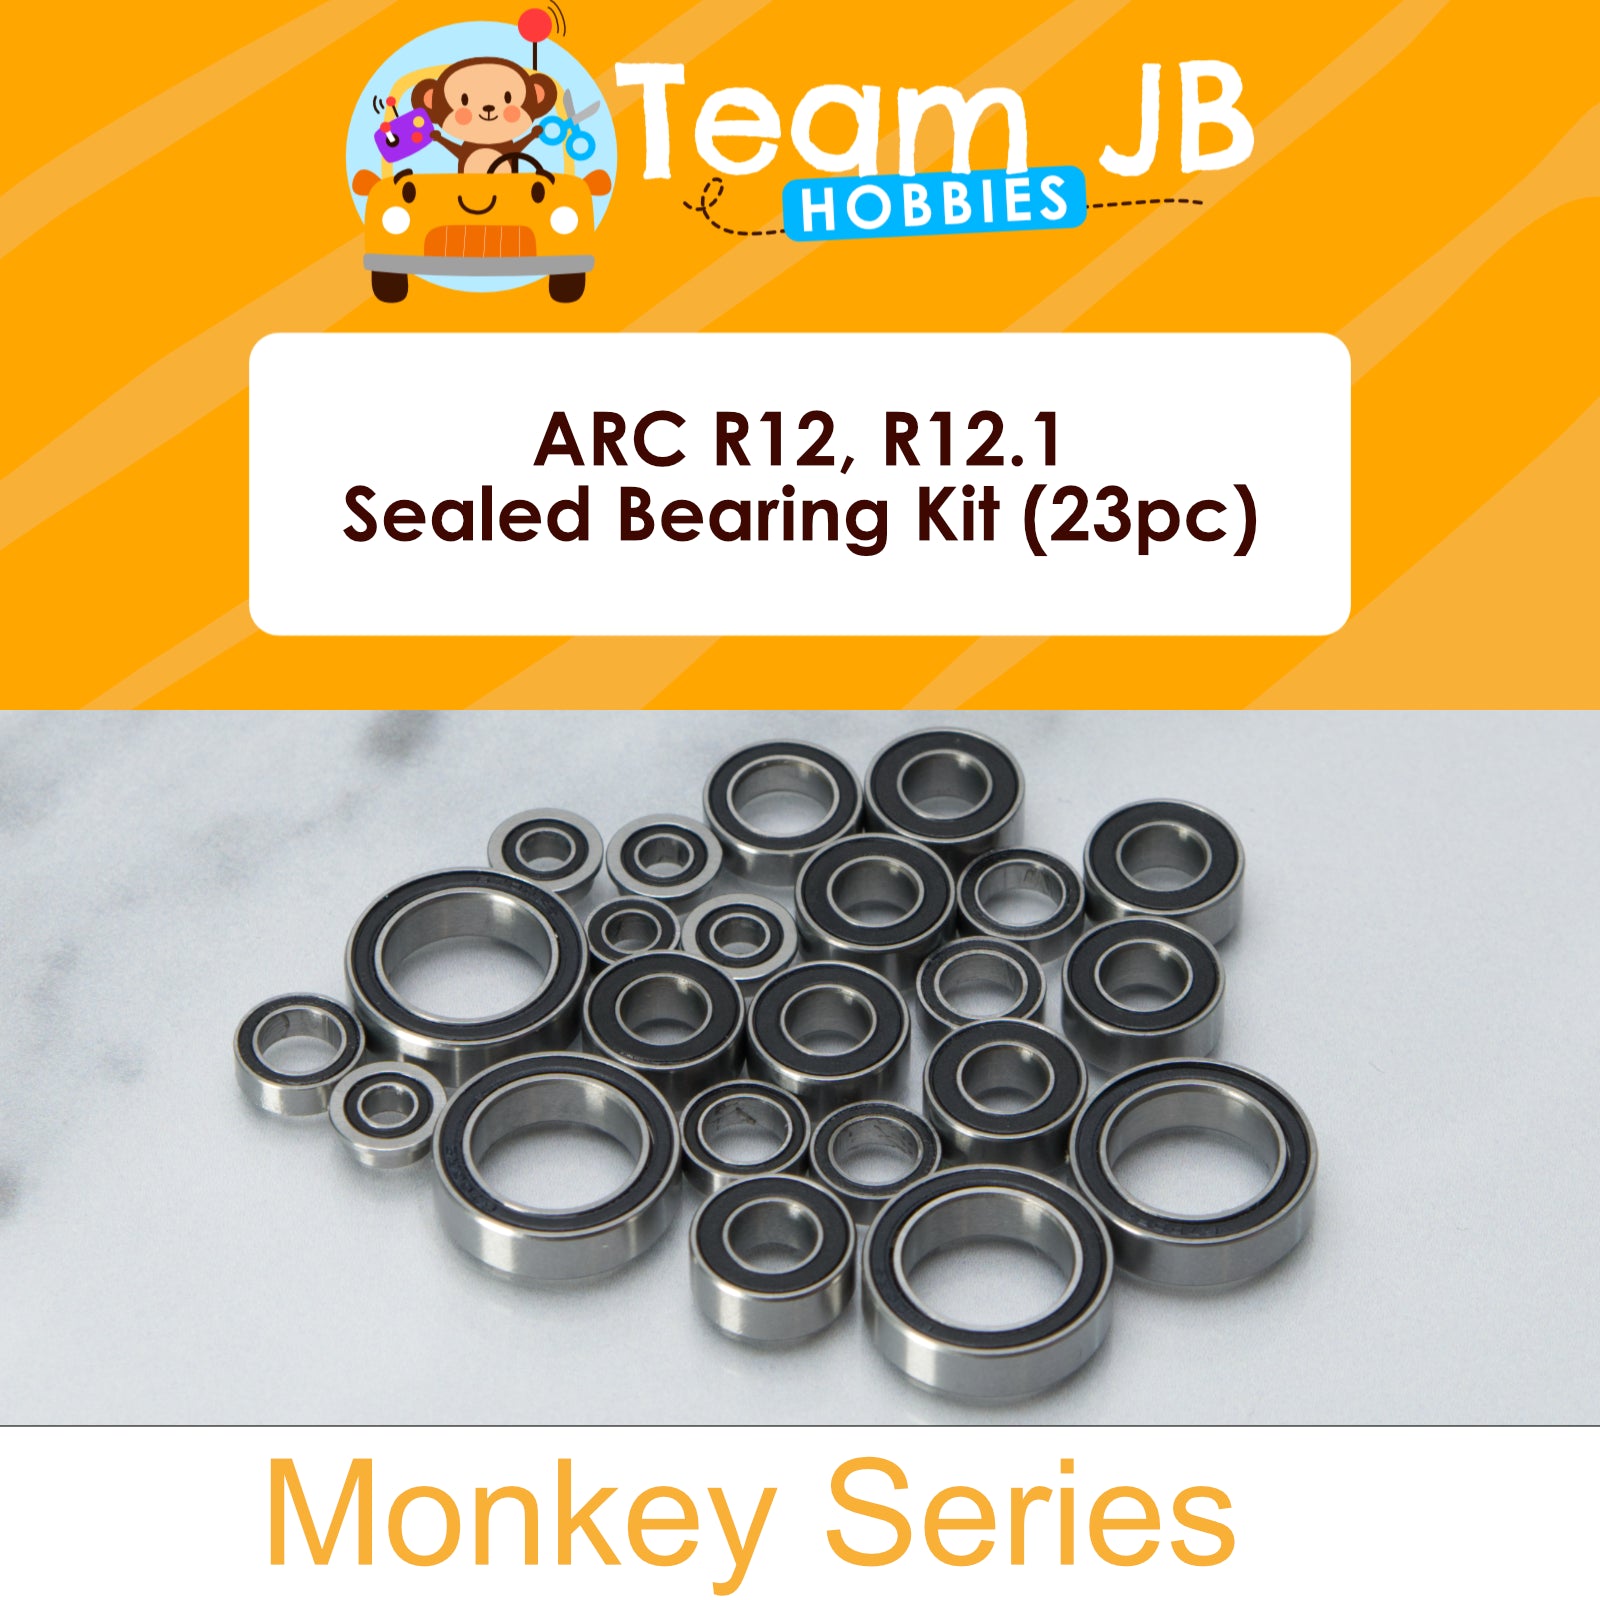 ARC R12, R12.1 - Sealed Bearing Kit